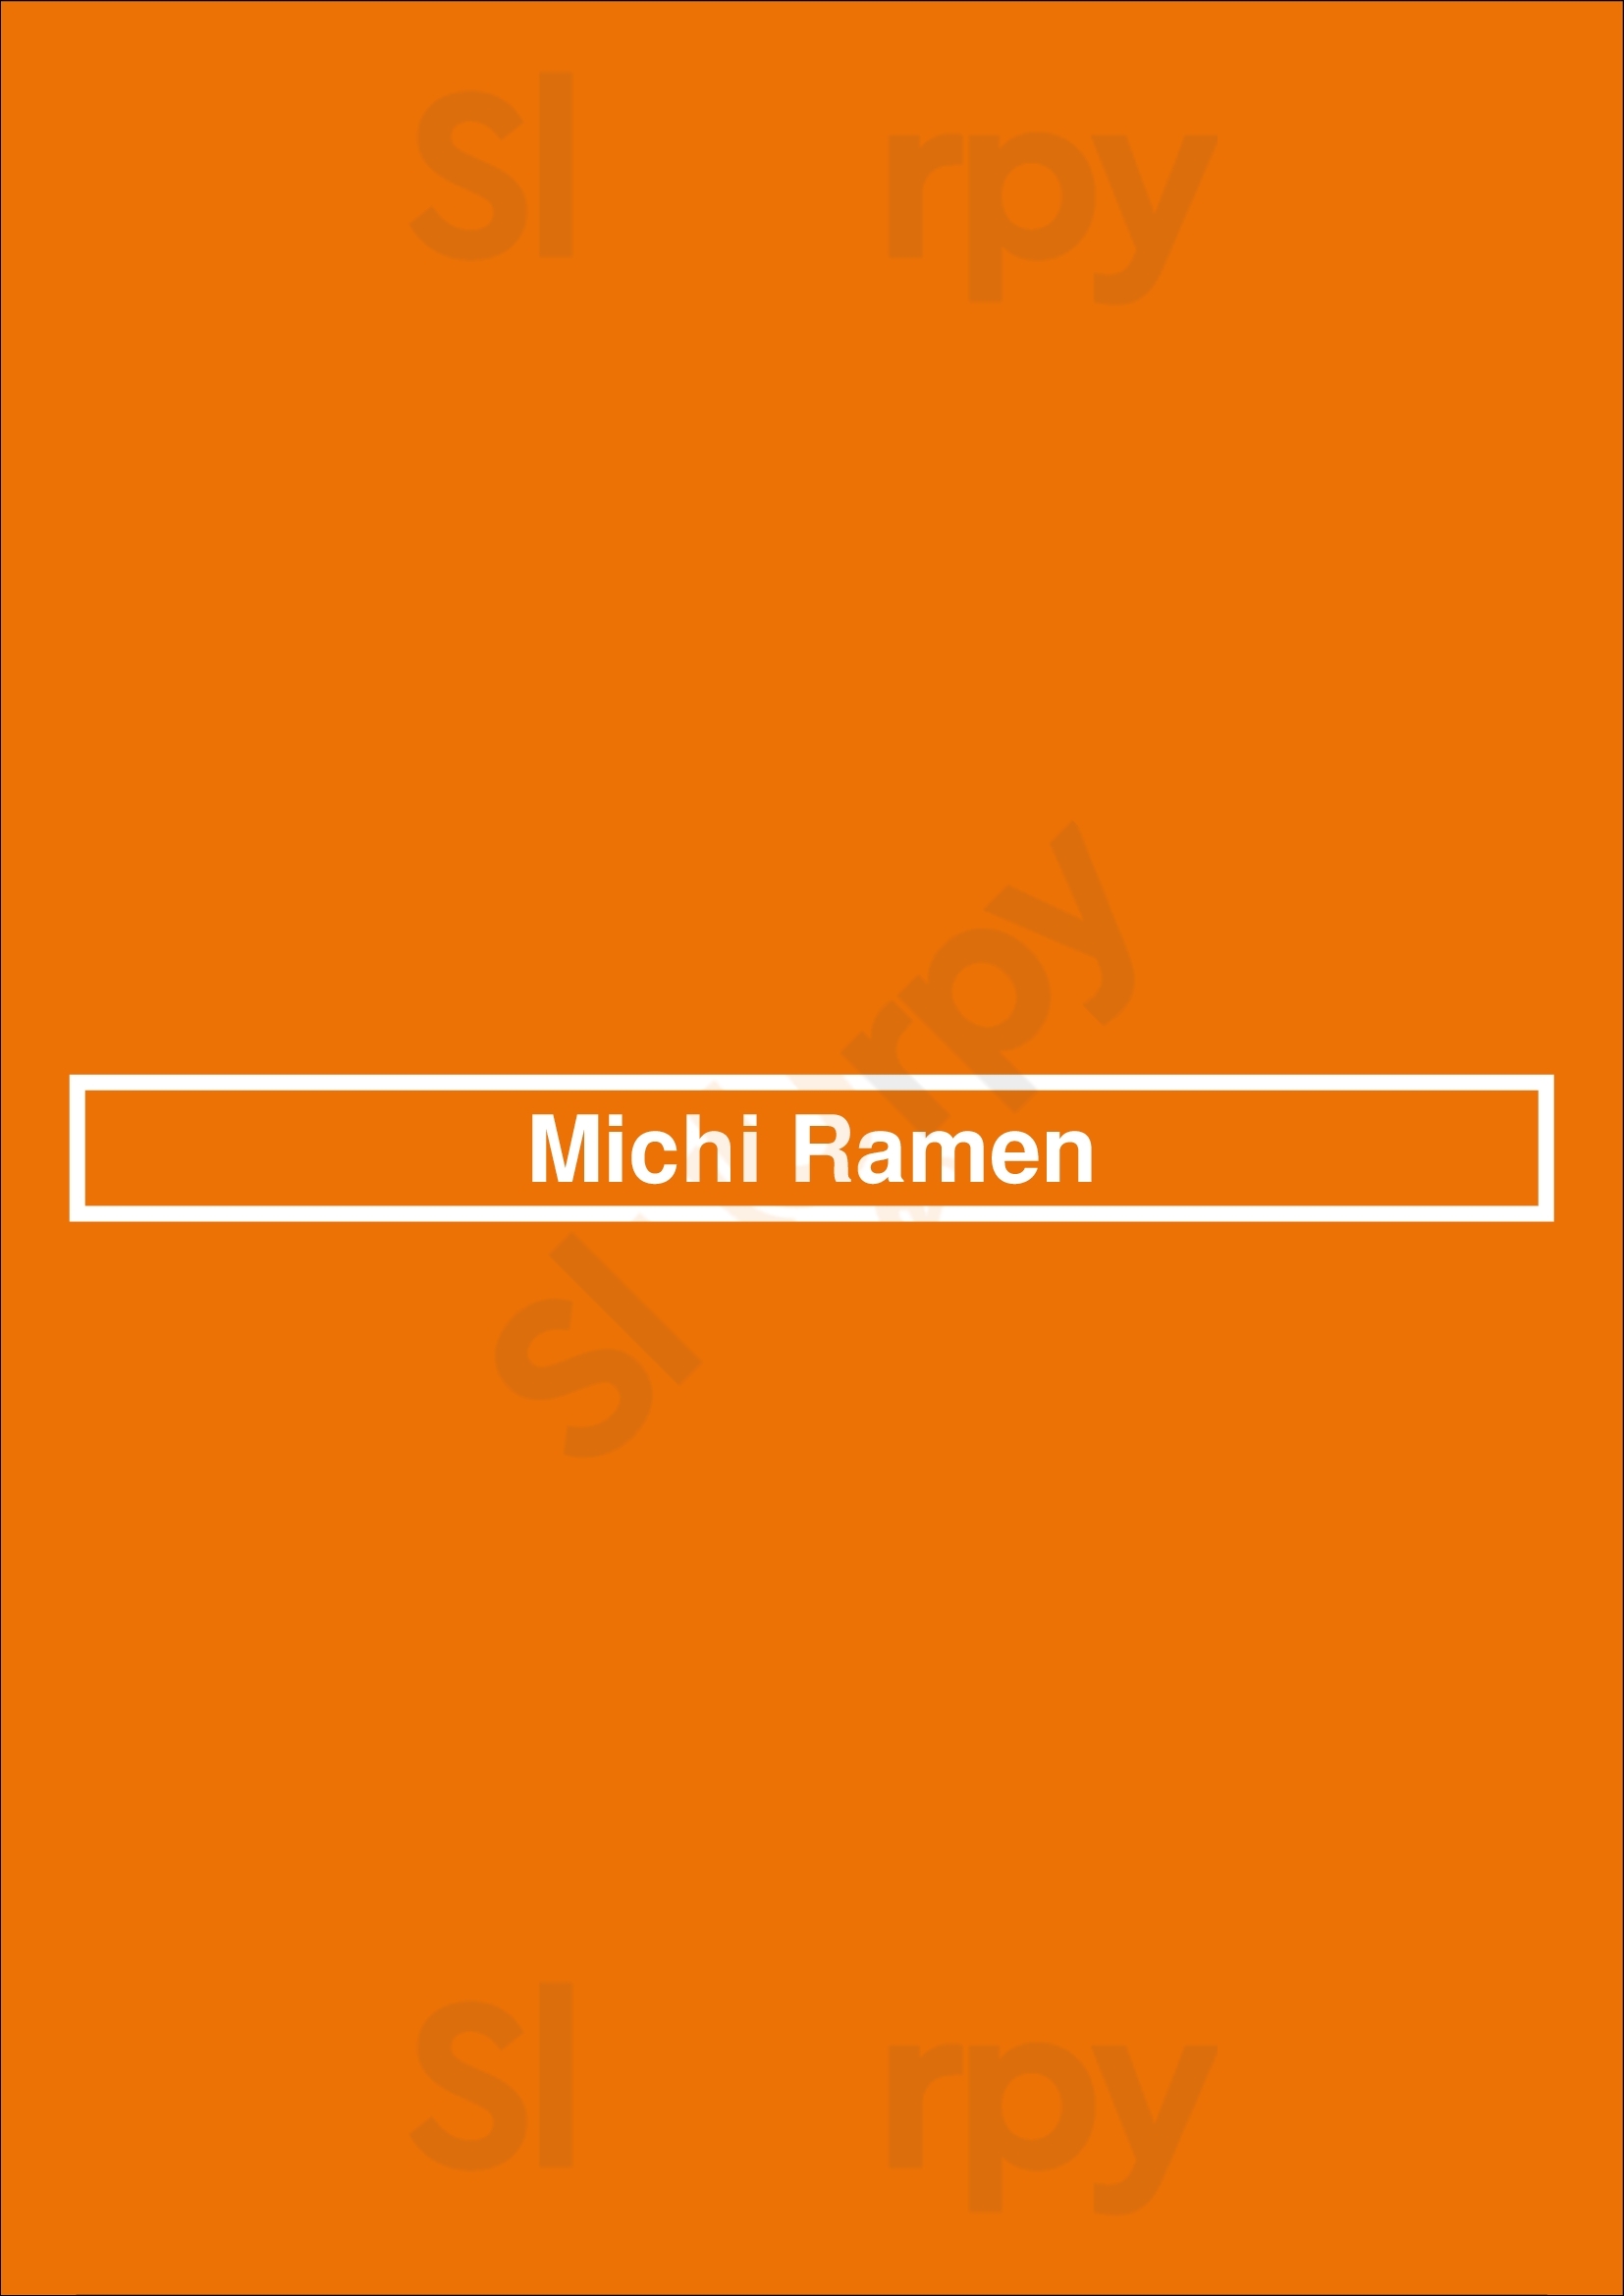 Michi Ramen Austin Menu - 1